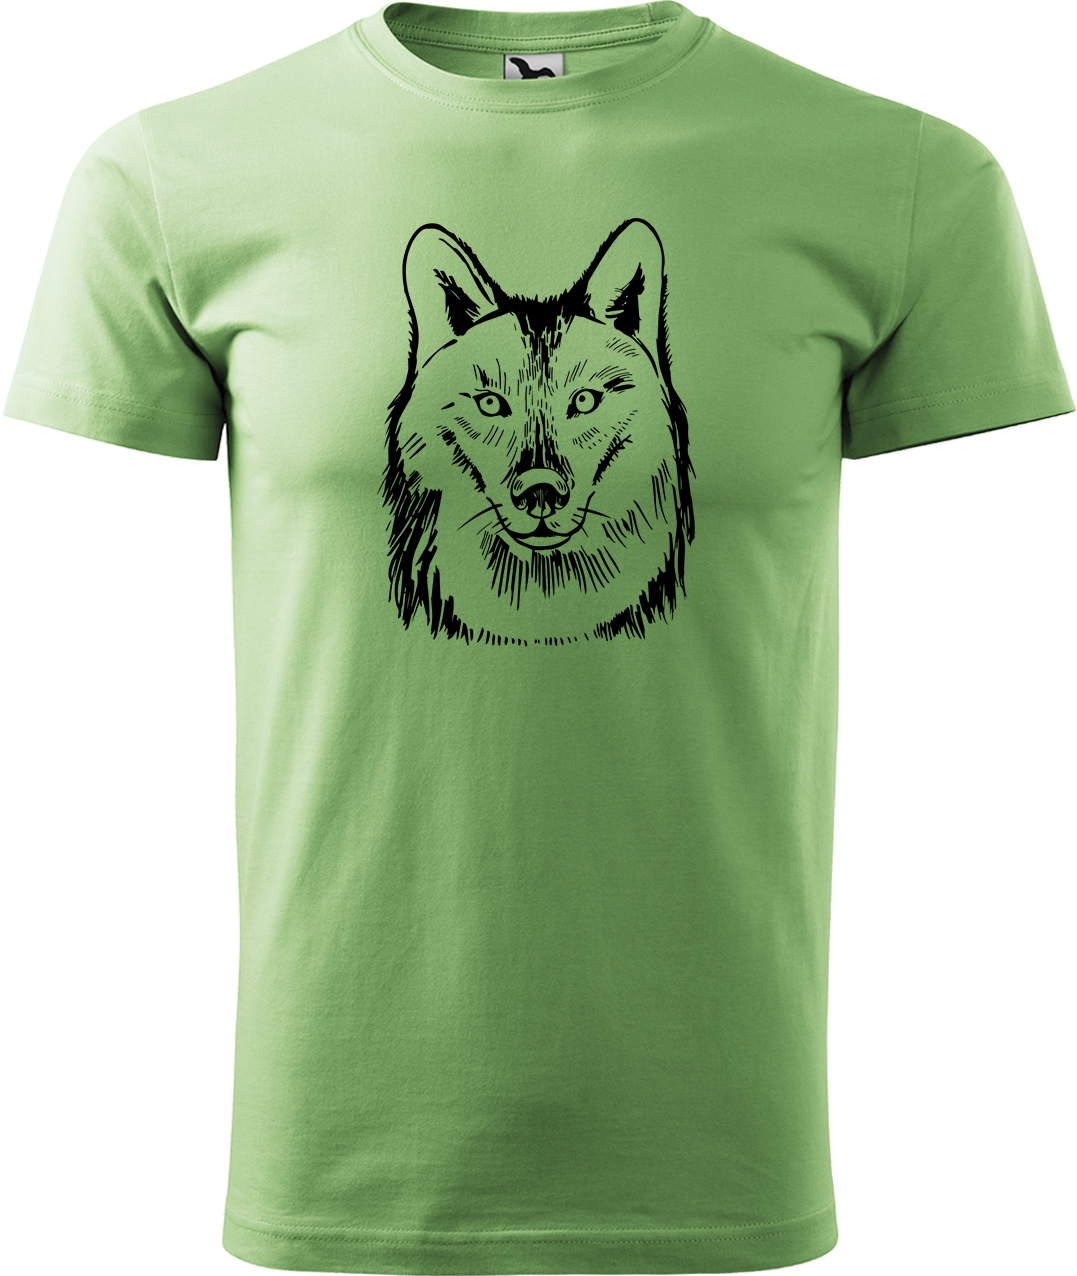 Pánské tričko s vlkem - Kresba vlka Velikost: M, Barva: Trávově zelená (39), Střih: pánský